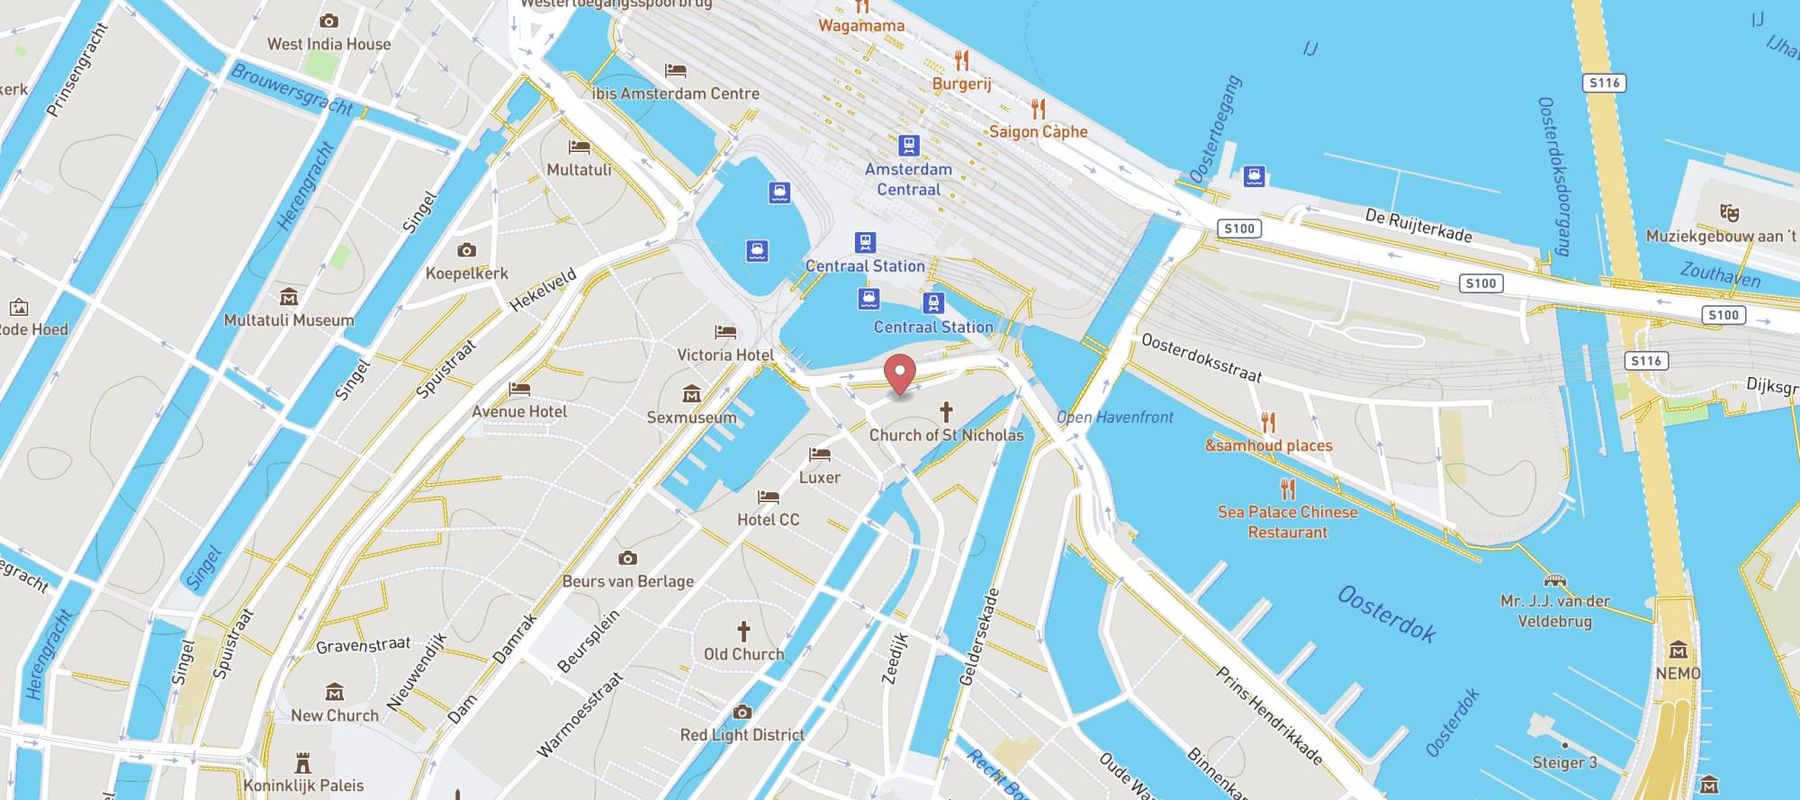 Restaurant Vermeer map